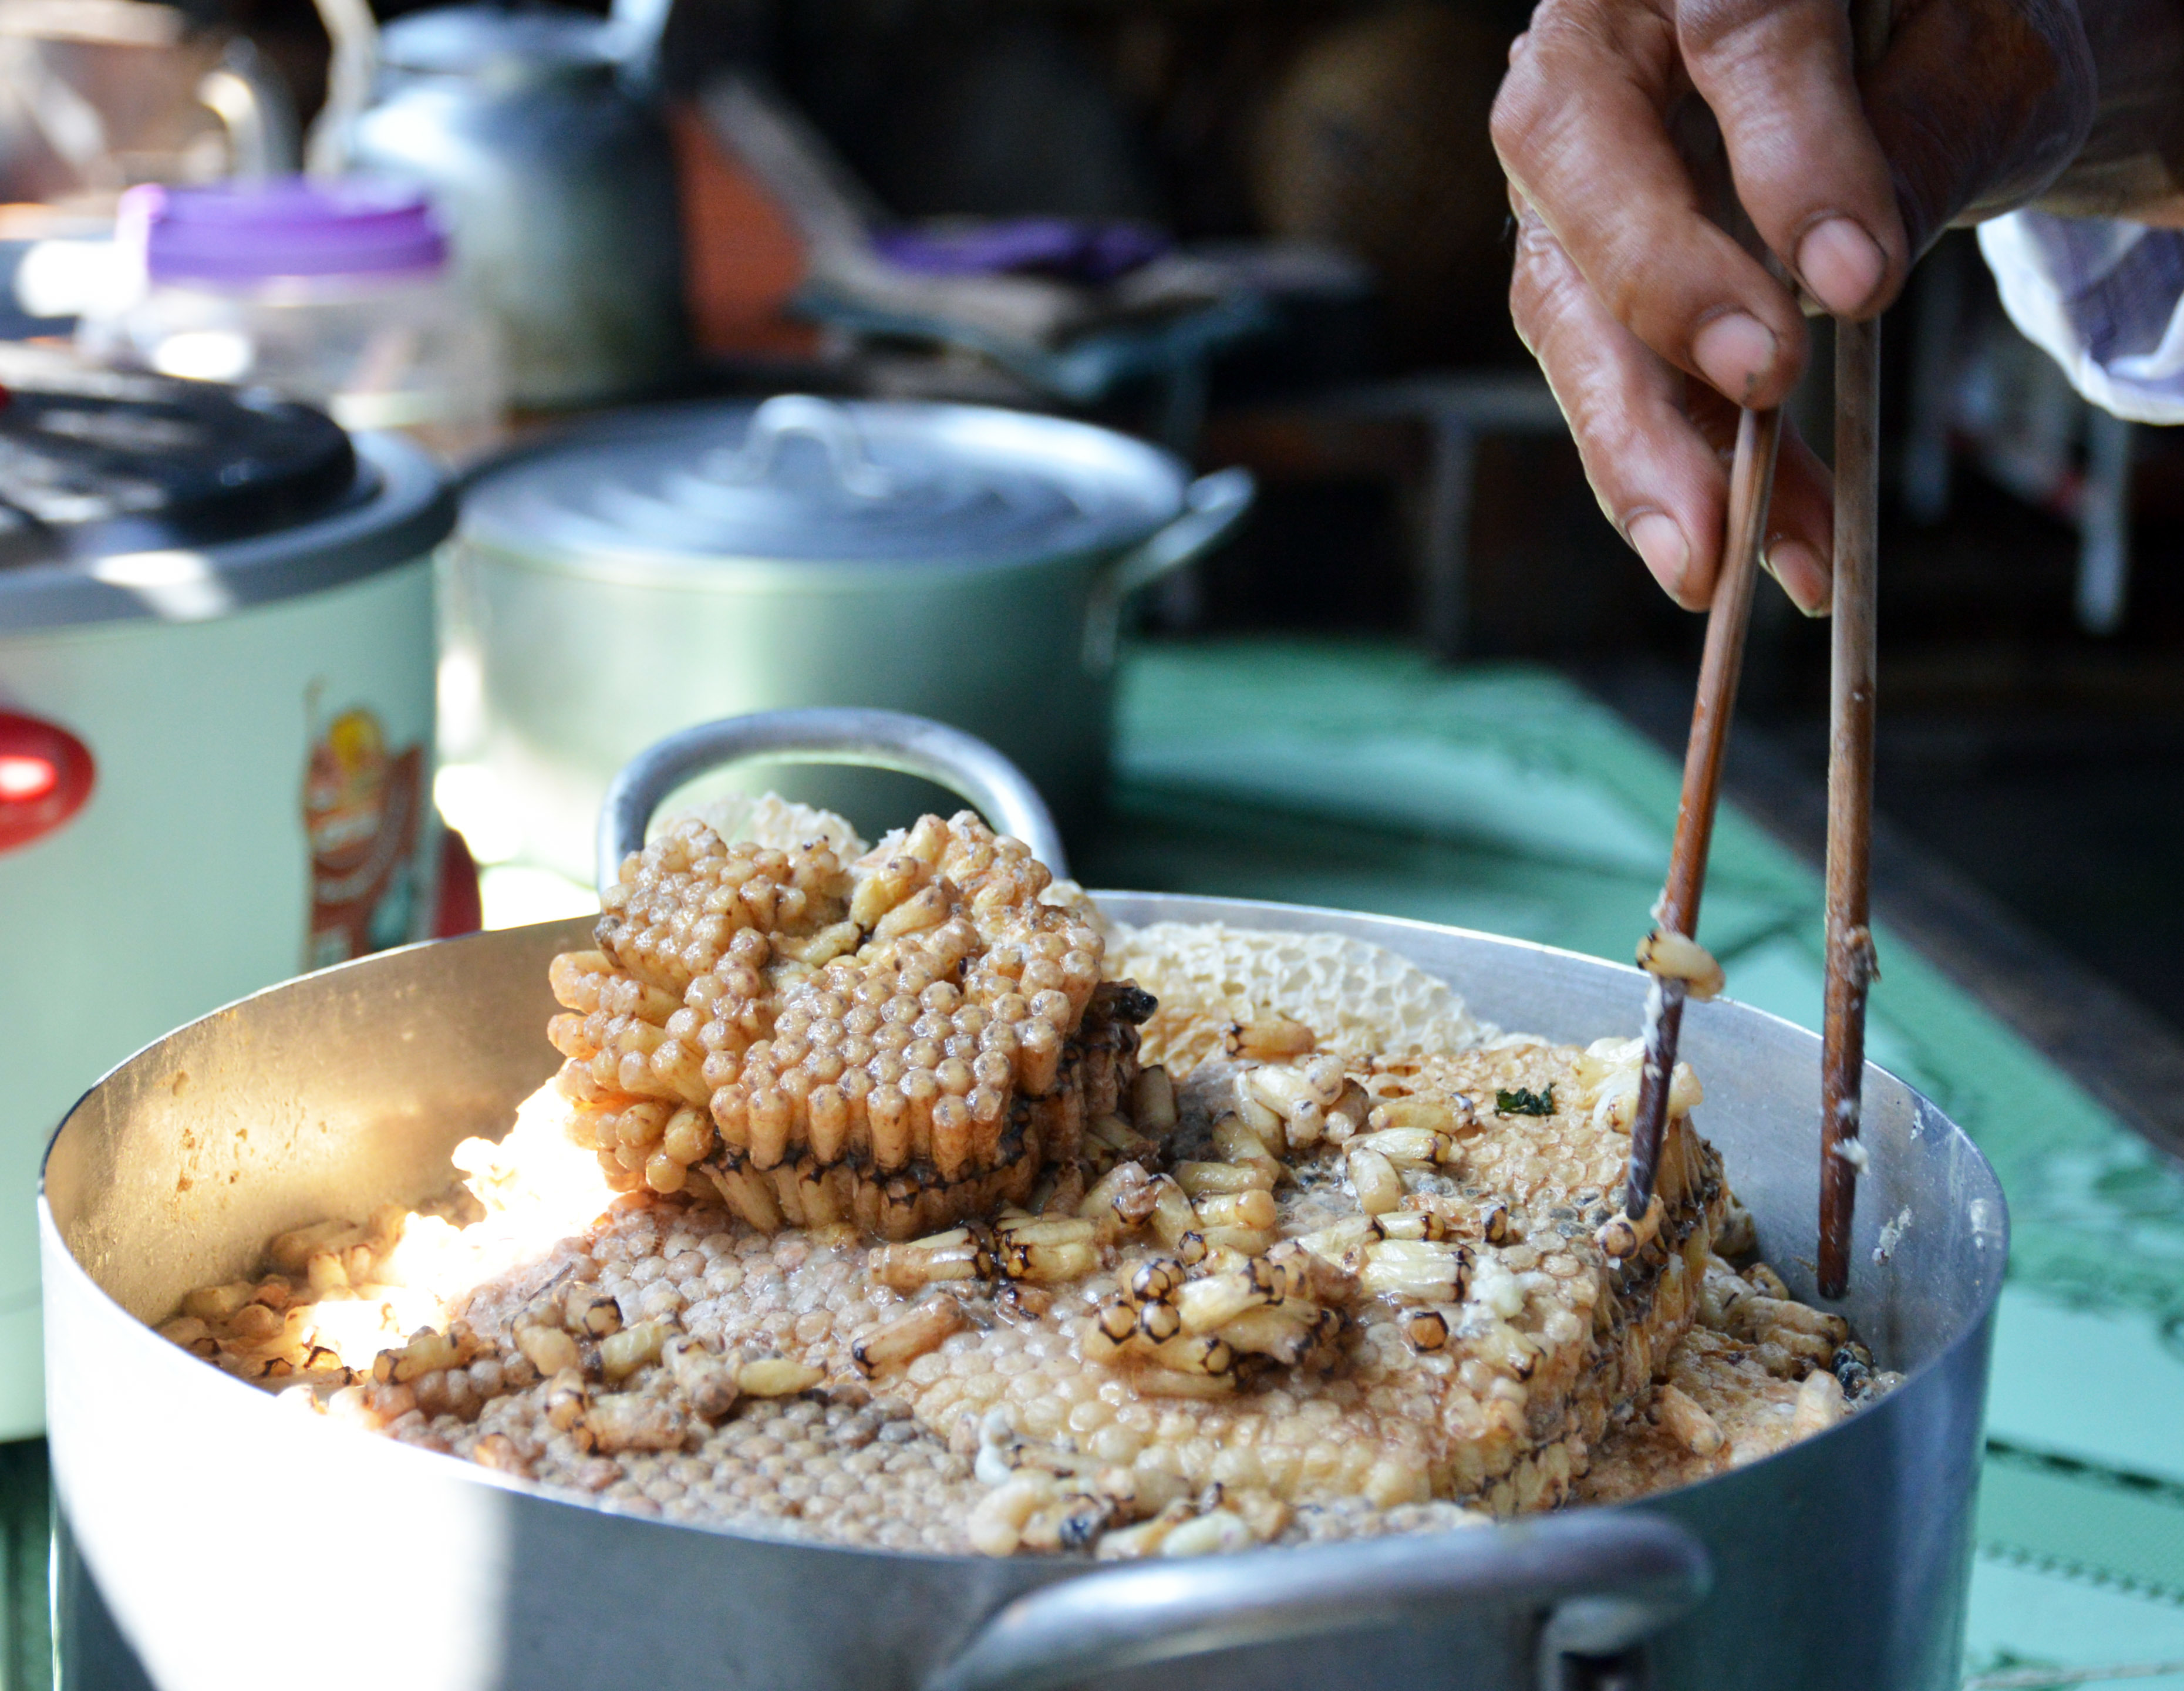 Luộc nhộng ong bằng nước sôi trước khi chế biến. Ảnh: vietnamnet.